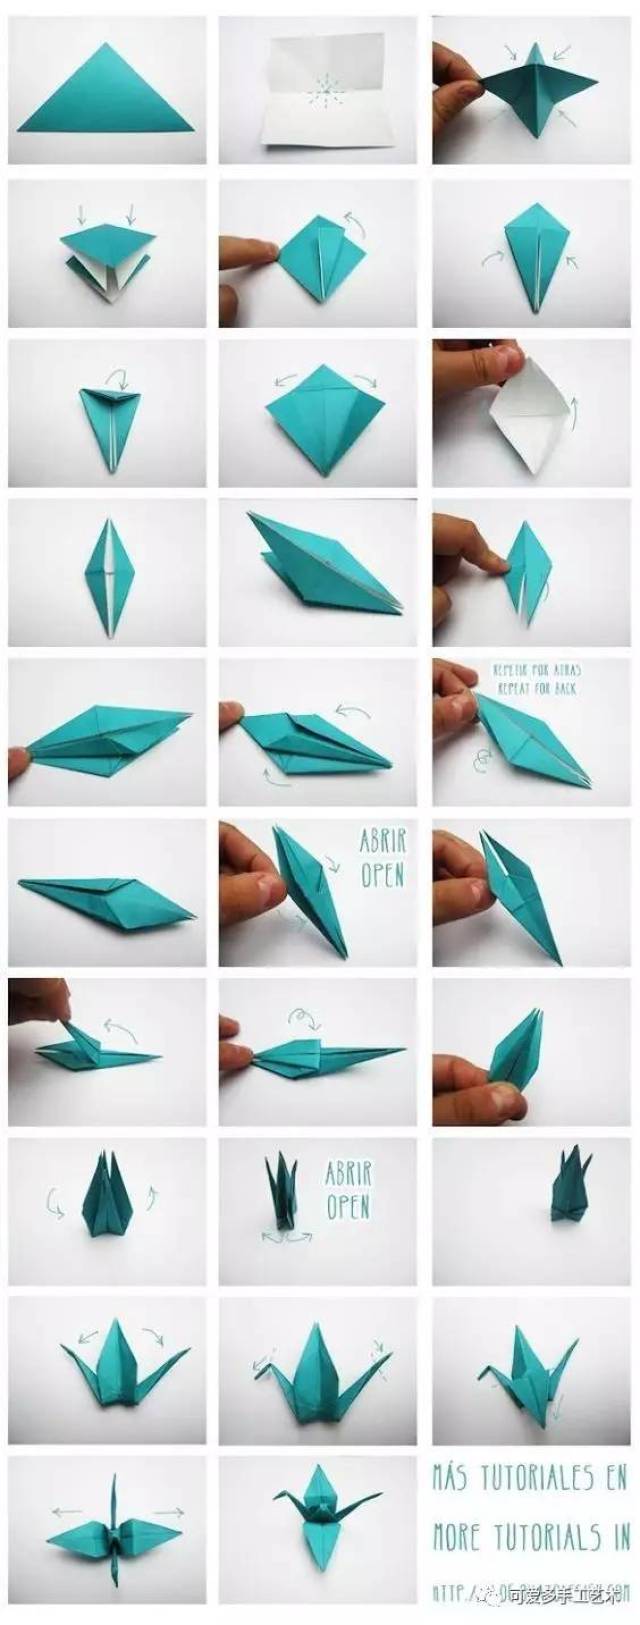 从小就会折纸鹤,却不知道原来可以这样用,看完之后都想天天折了!